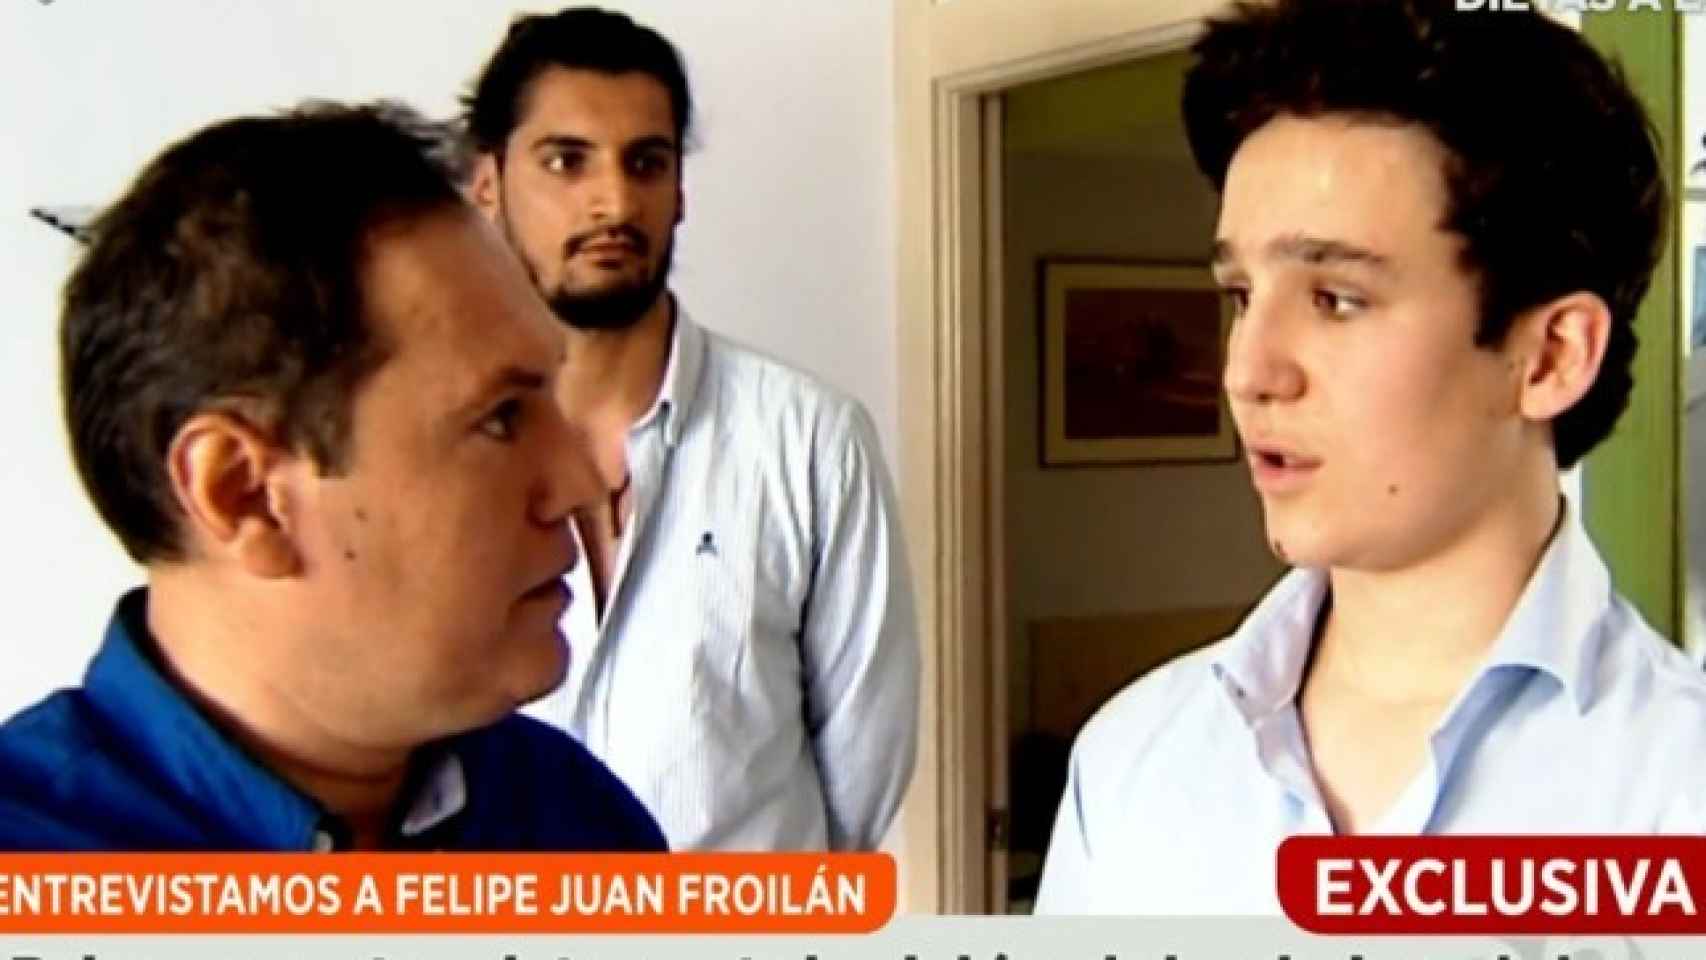 Así ha sido la primera entrevista en televisión de Felipe Juan Froilán. Al fondo, su amigo conocido como 'el lotero'.